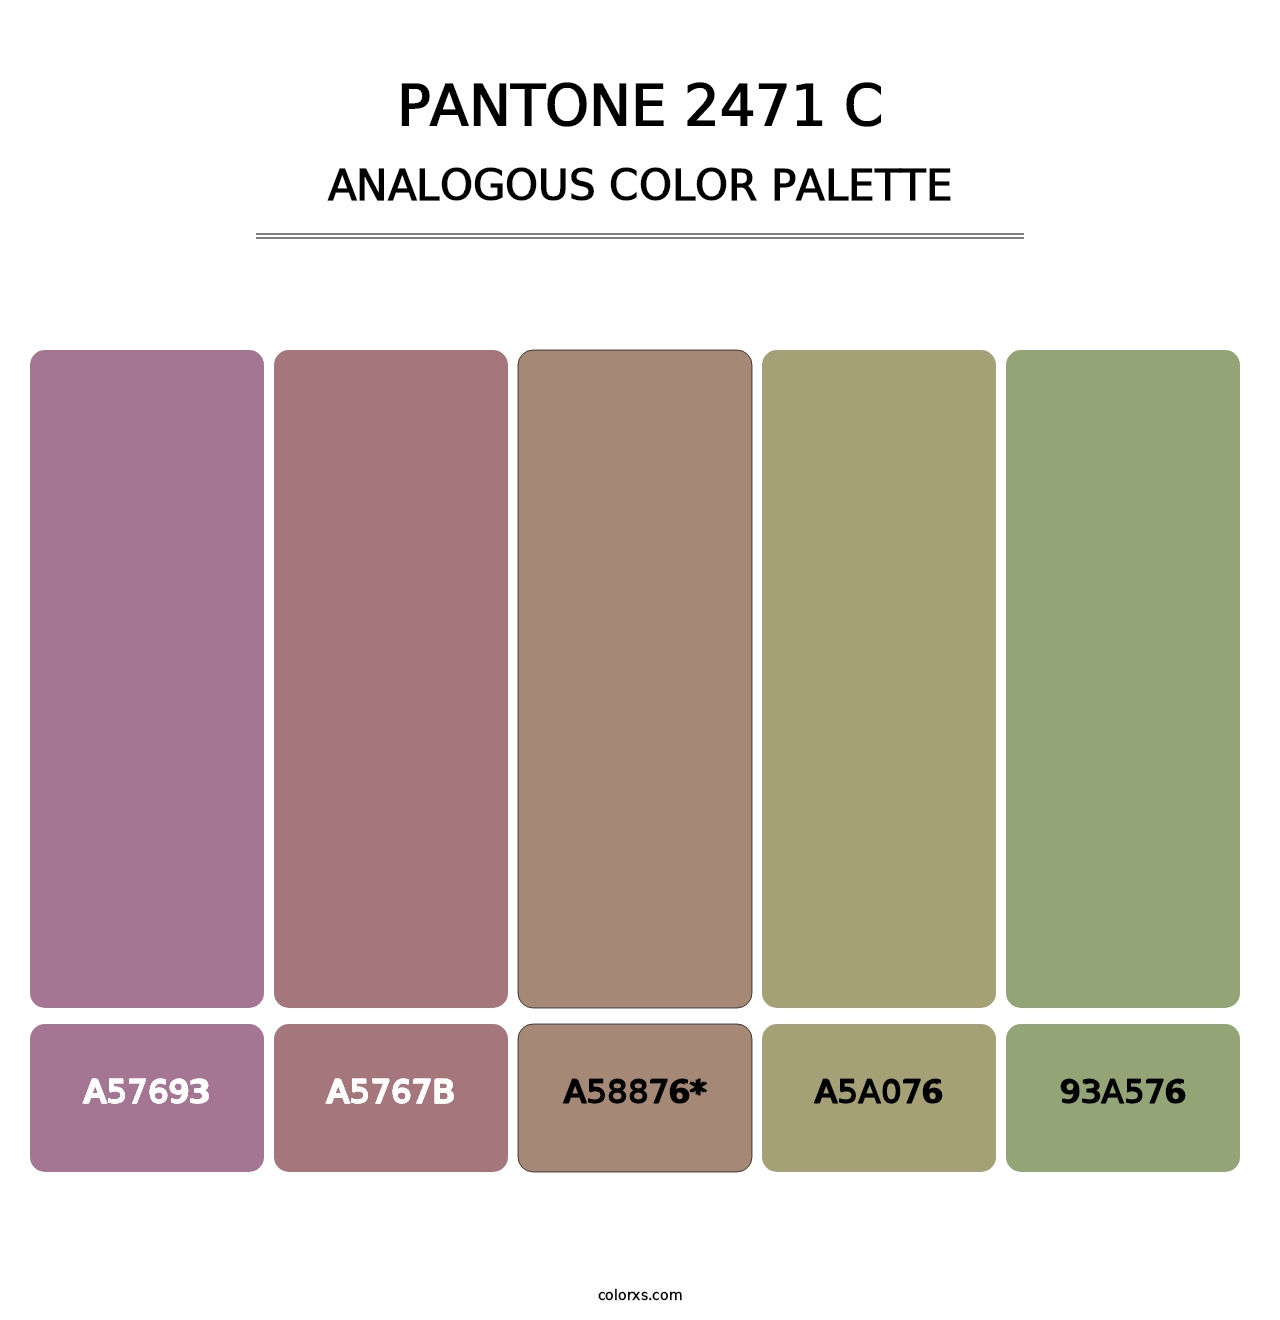 PANTONE 2471 C - Analogous Color Palette